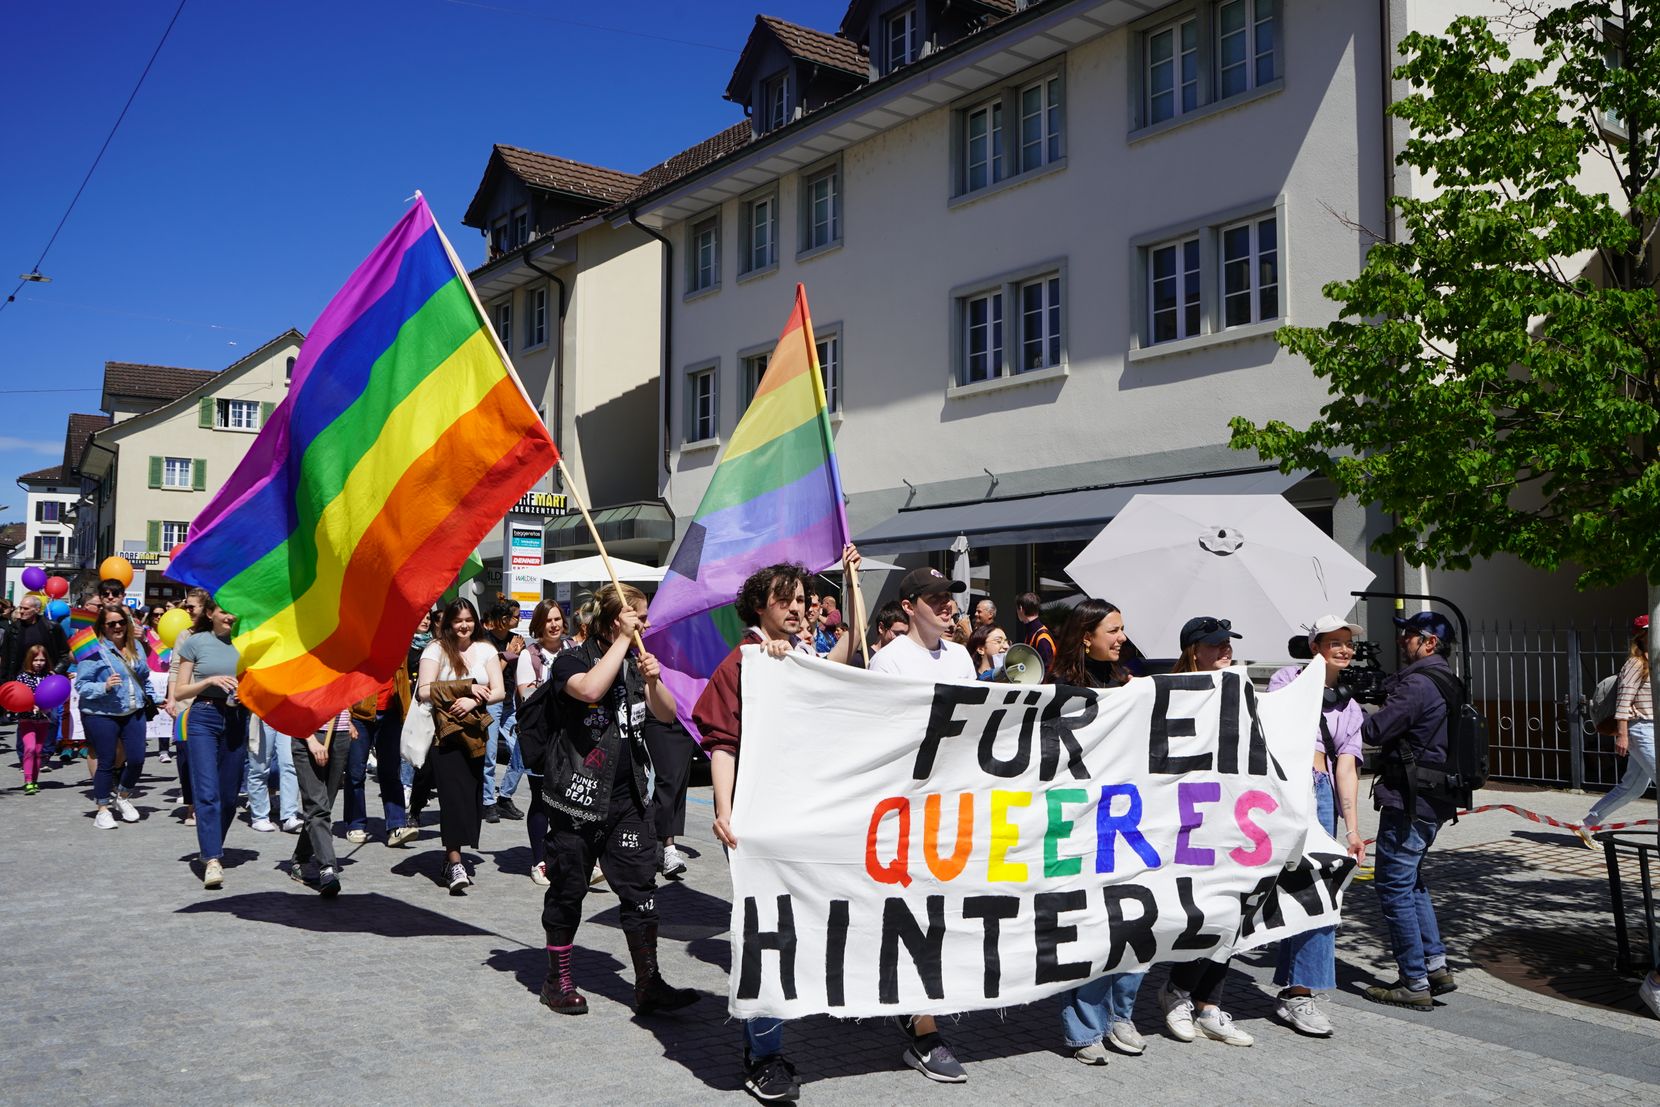 Man sieht Personen an einer Demonstration. Sie tragen ein Transparent: Für ein queeres Hinterland. Ebenfalls sichtbar sind zwei Regenbogenfahnen.